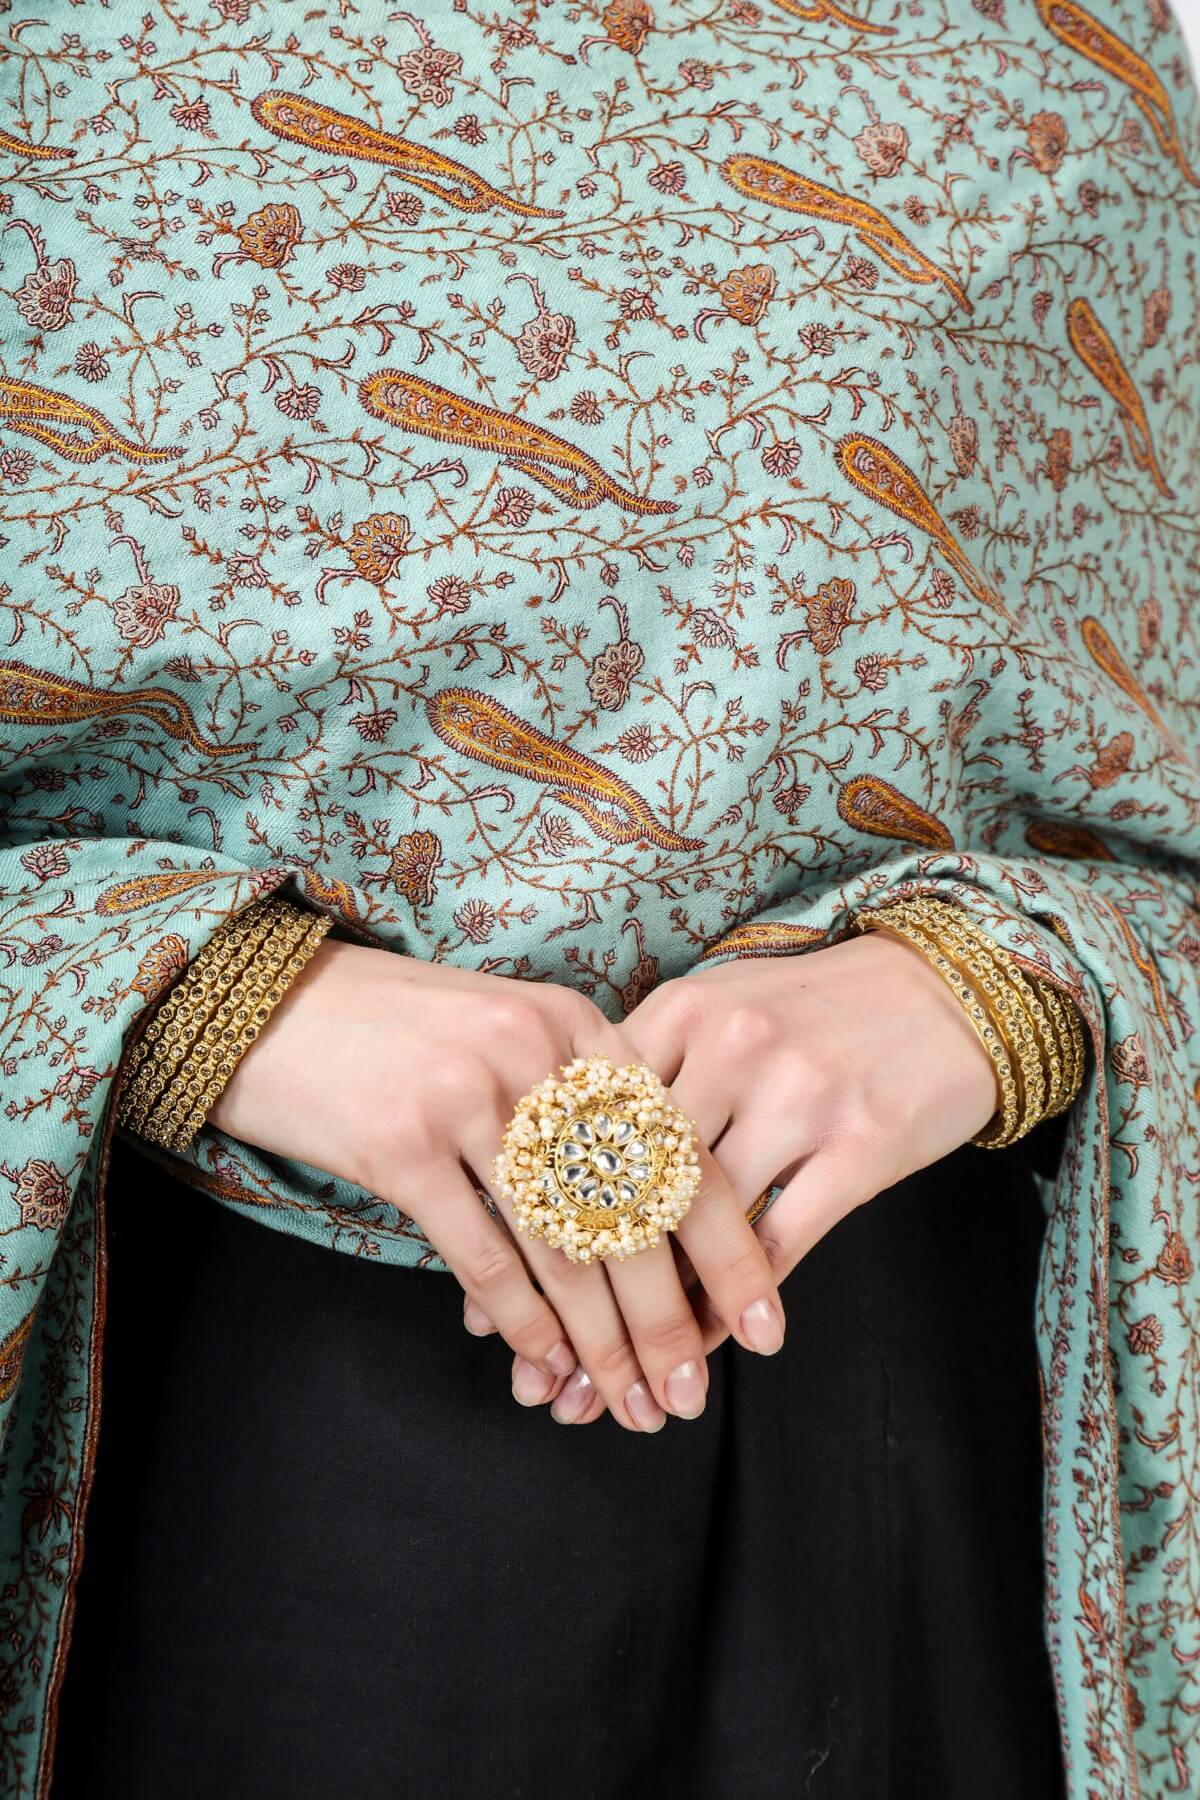 Shop Authentic Pashmina Shawls - Explore Genuine G.I. Pashmina Shawls in Delhi, Mumbai, Kolkata, Srinagar, Canada, UK, USA, and China. Elevate Your Style with Original Pashmina Elegance